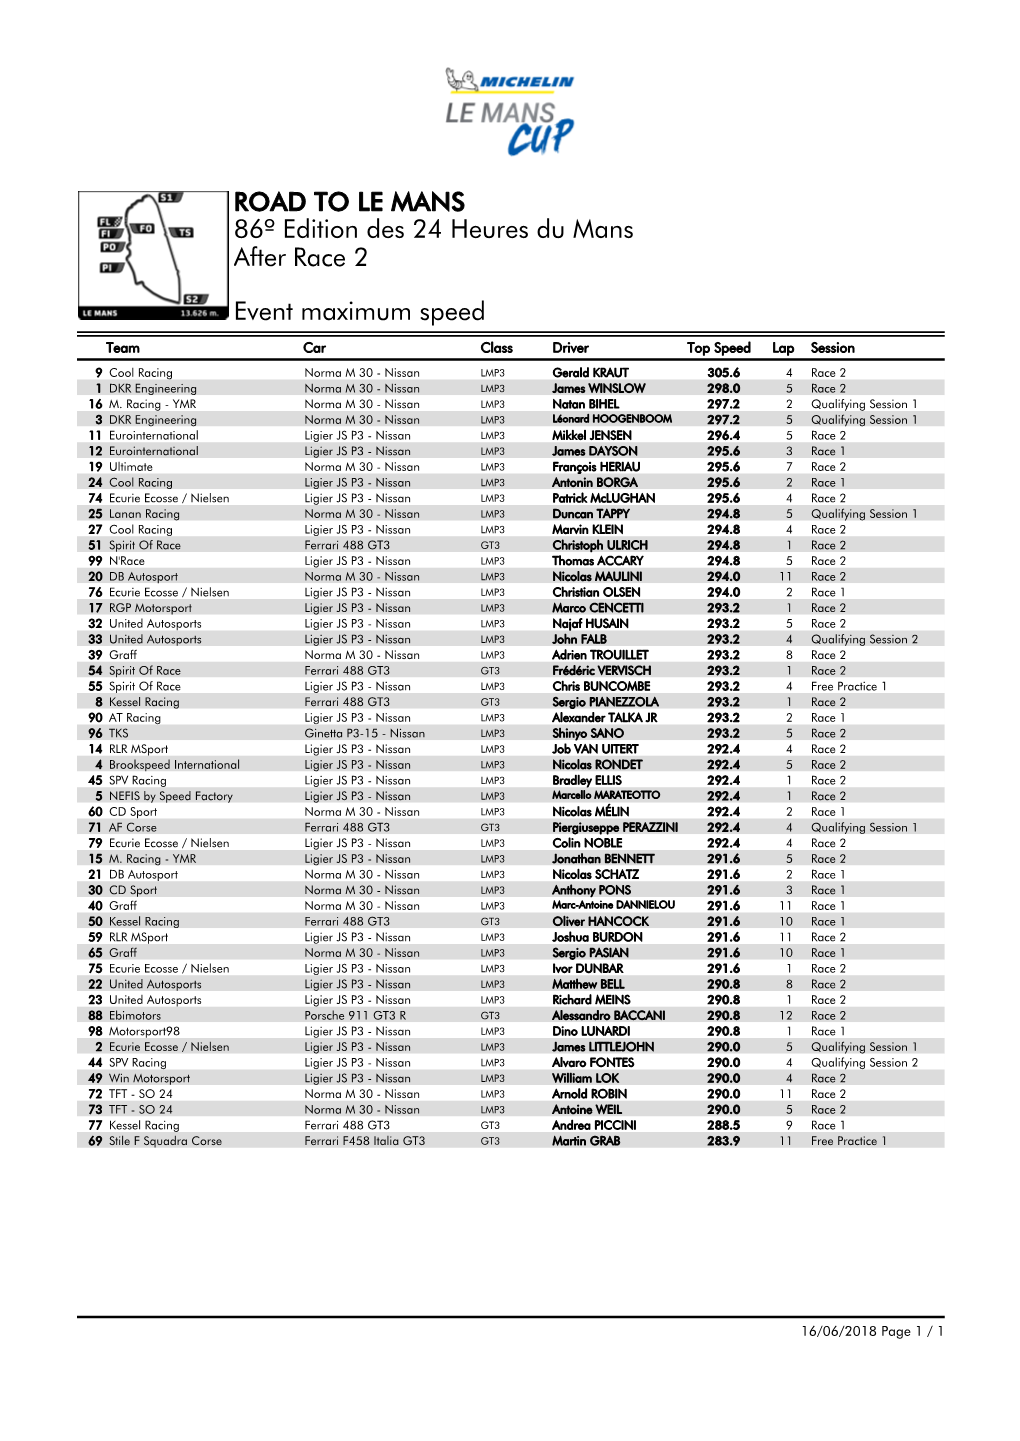 Event Maximum Speed Race 2 86º Edition Des 24 Heures Du Mans